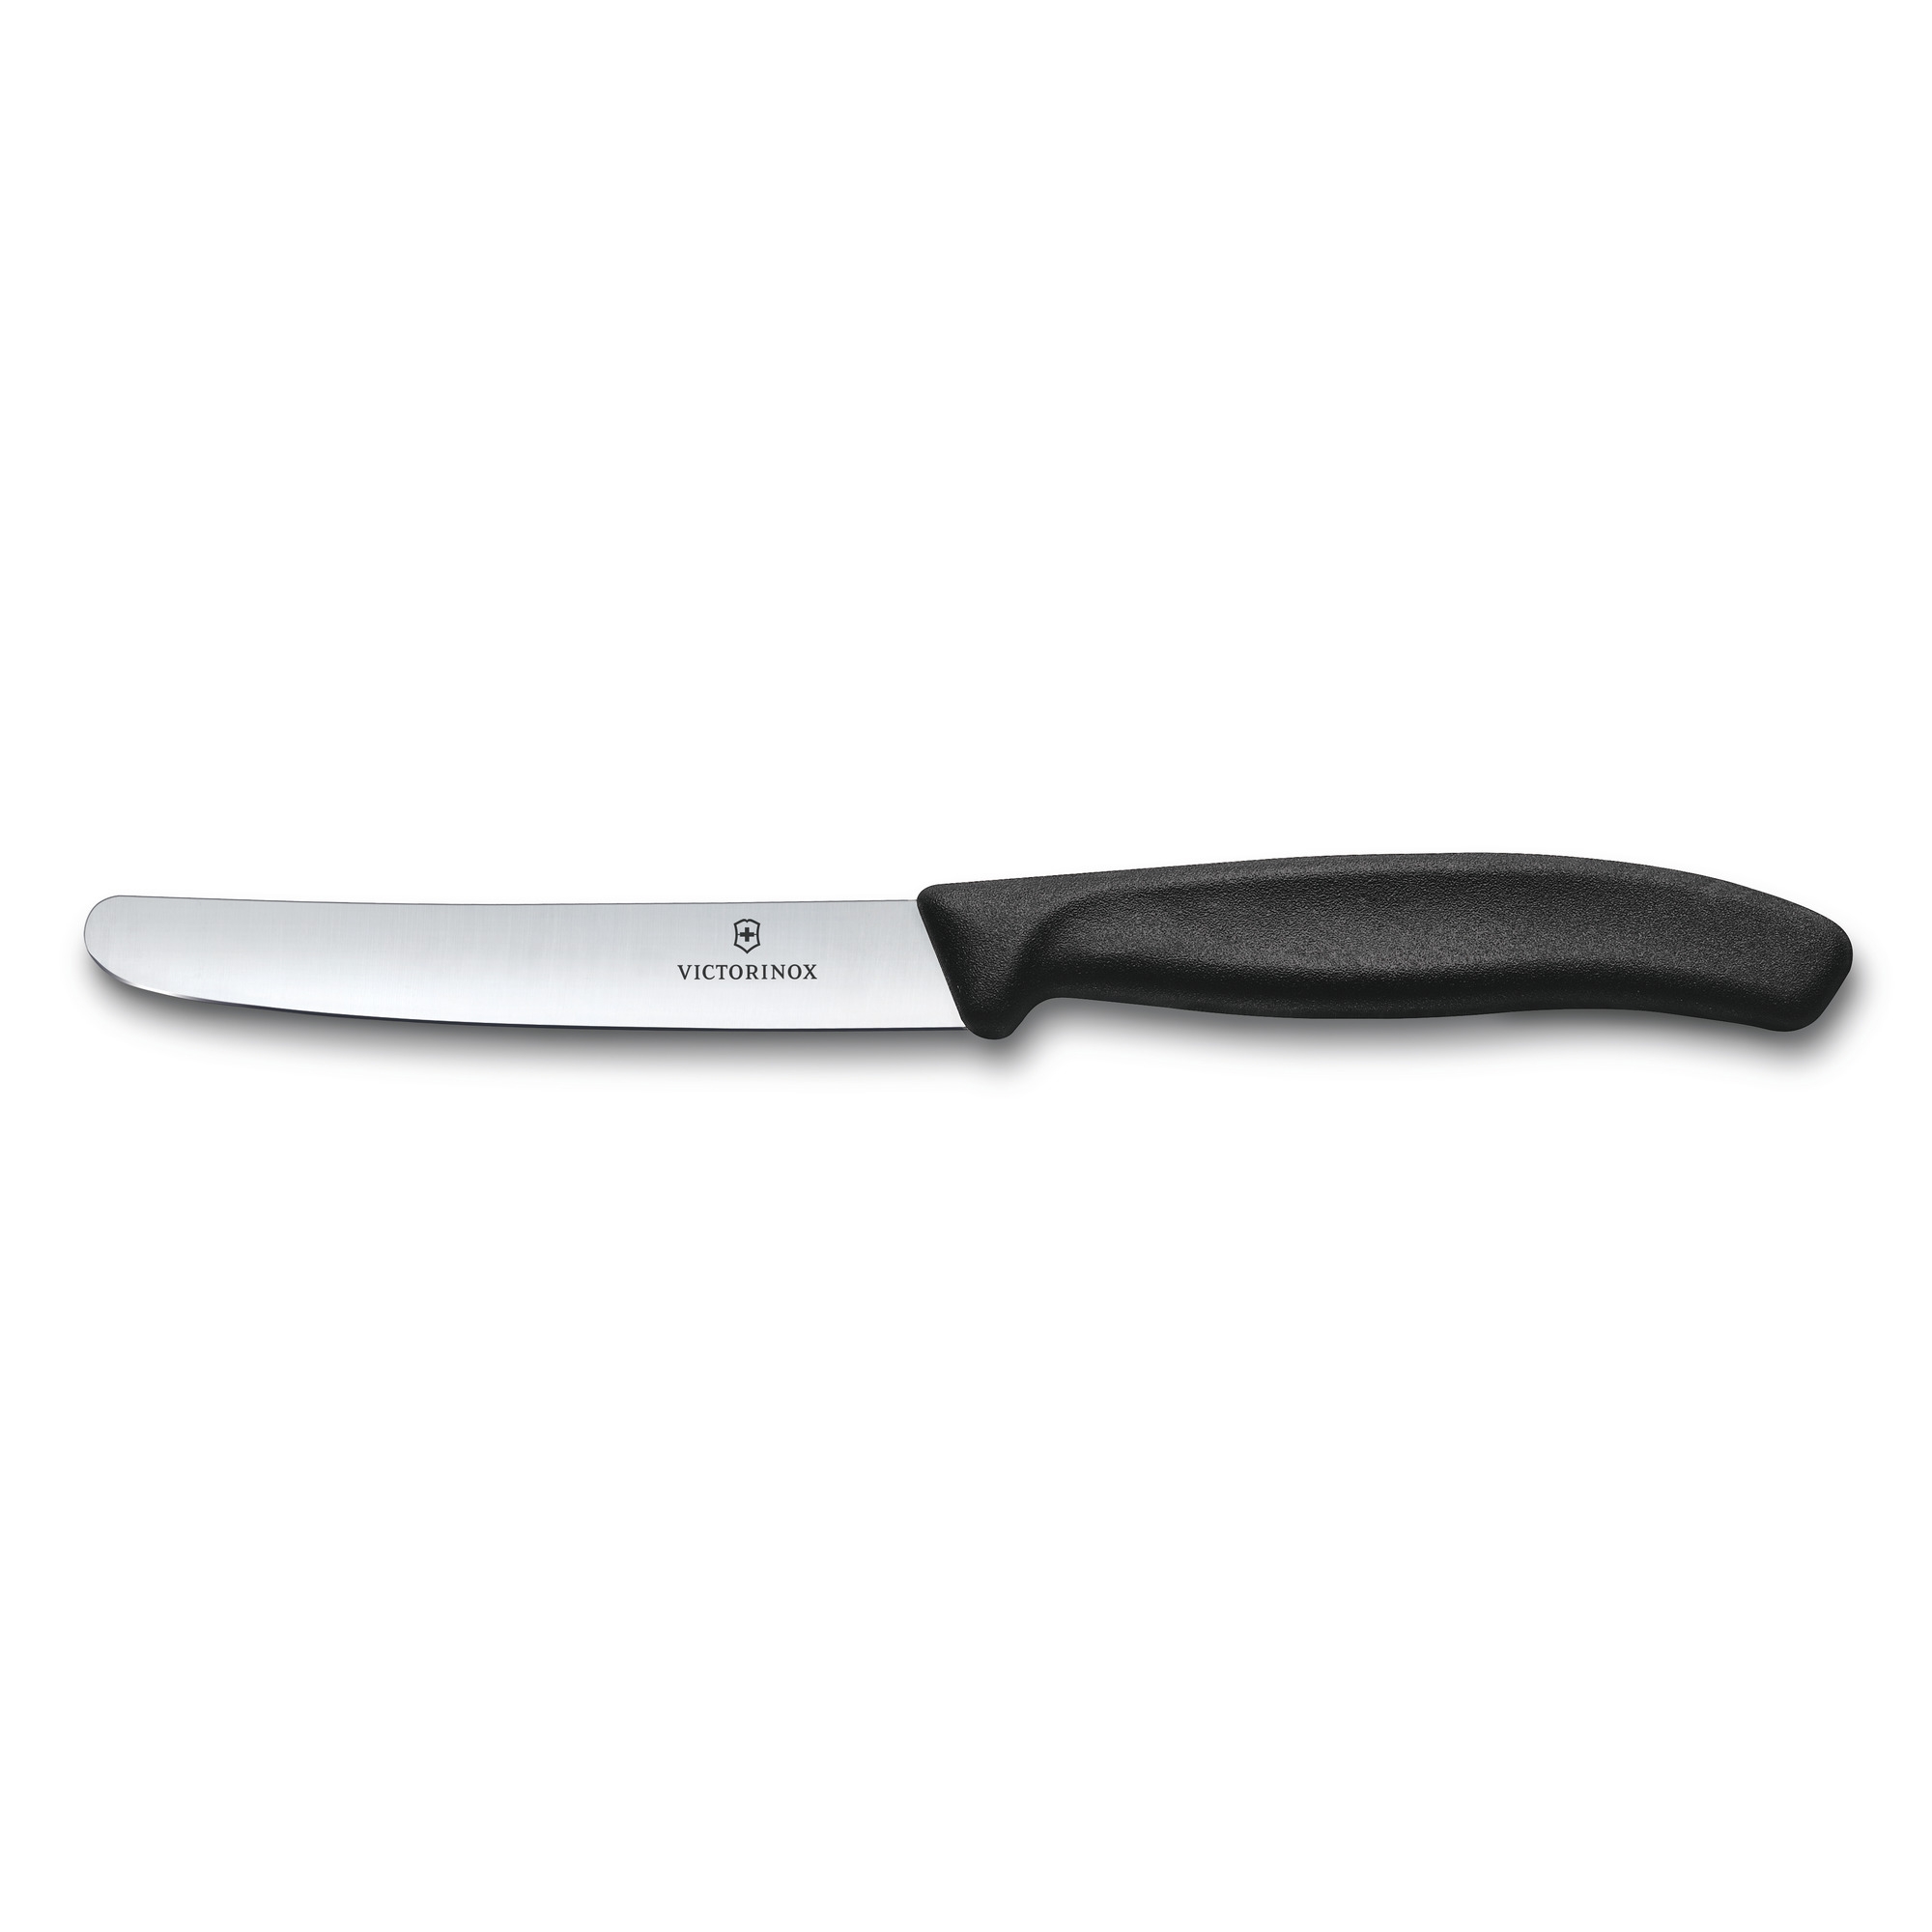 Нож столовый VICTORINOX SwissClassic, прямое лезвие 11 см с закруглённым кончиком, чёрный, черный, полипропилен